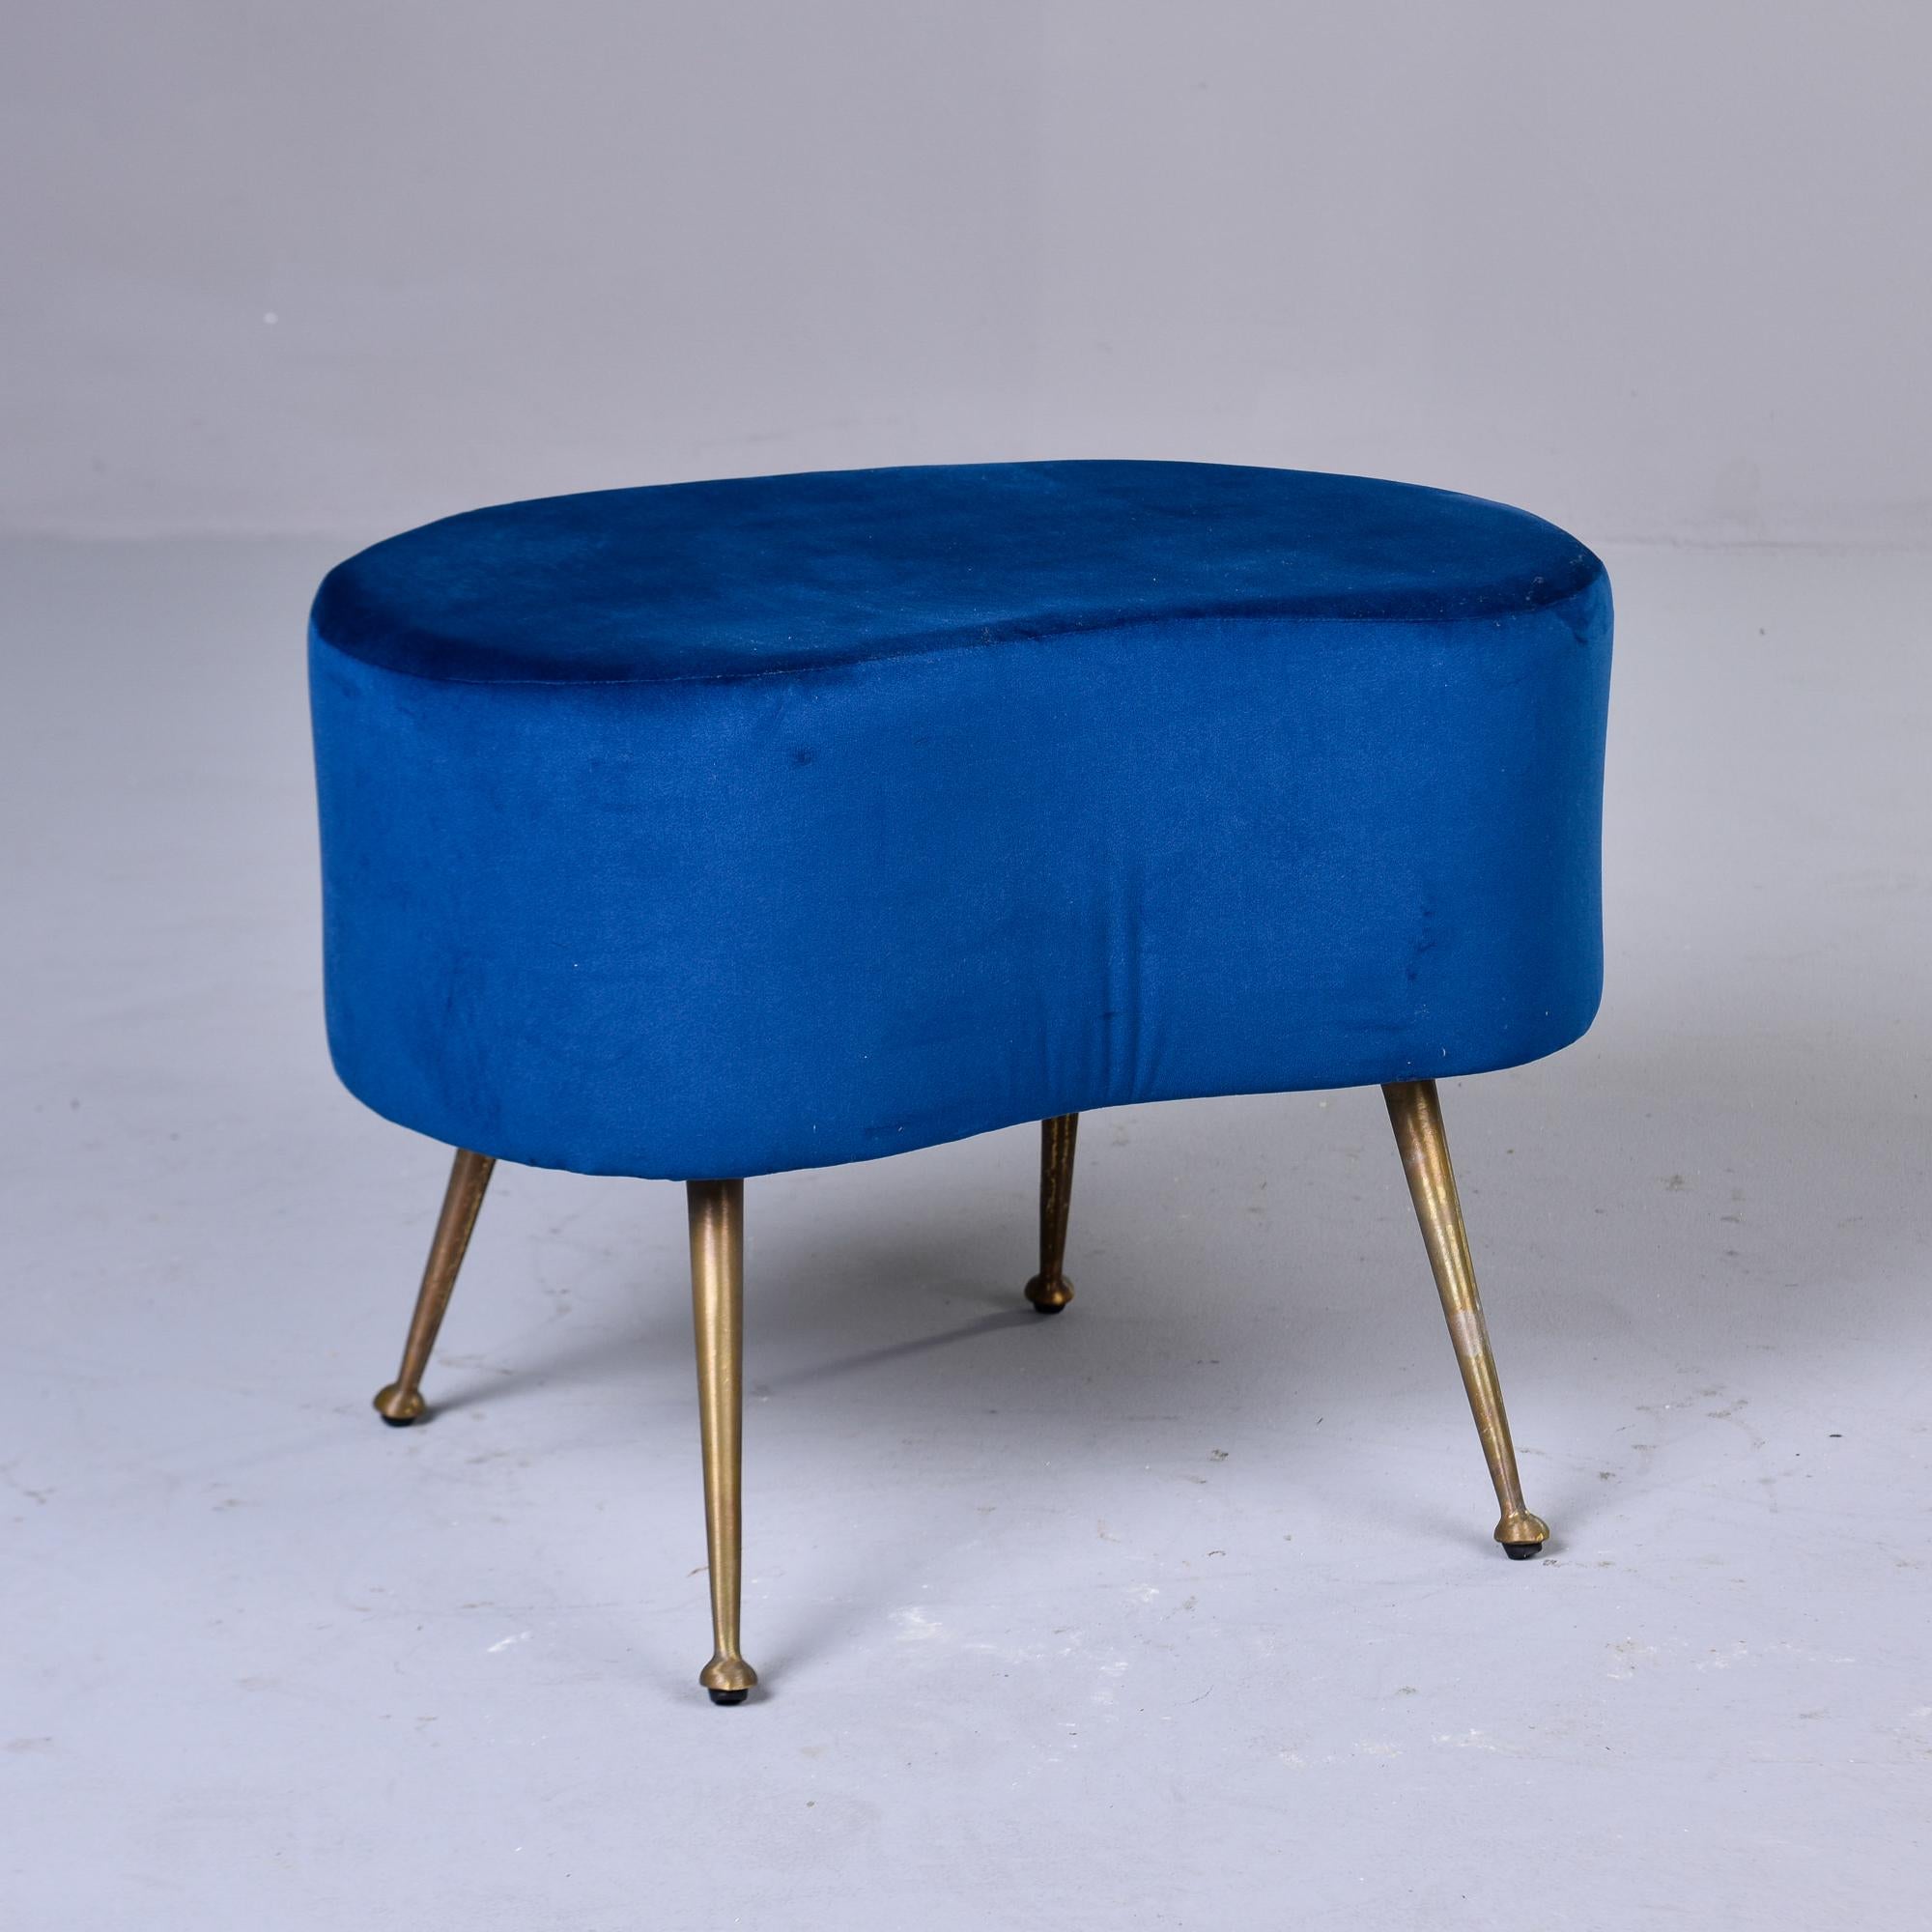 Circa late 1950 / early 1960s Italian kidney shape stool with slender brass legs and newer royal blue velvet upholstery. Fabricant inconnu. Deux tabourets sont disponibles au moment de la rédaction de cet article. Vendus et tarifés individuellement. 